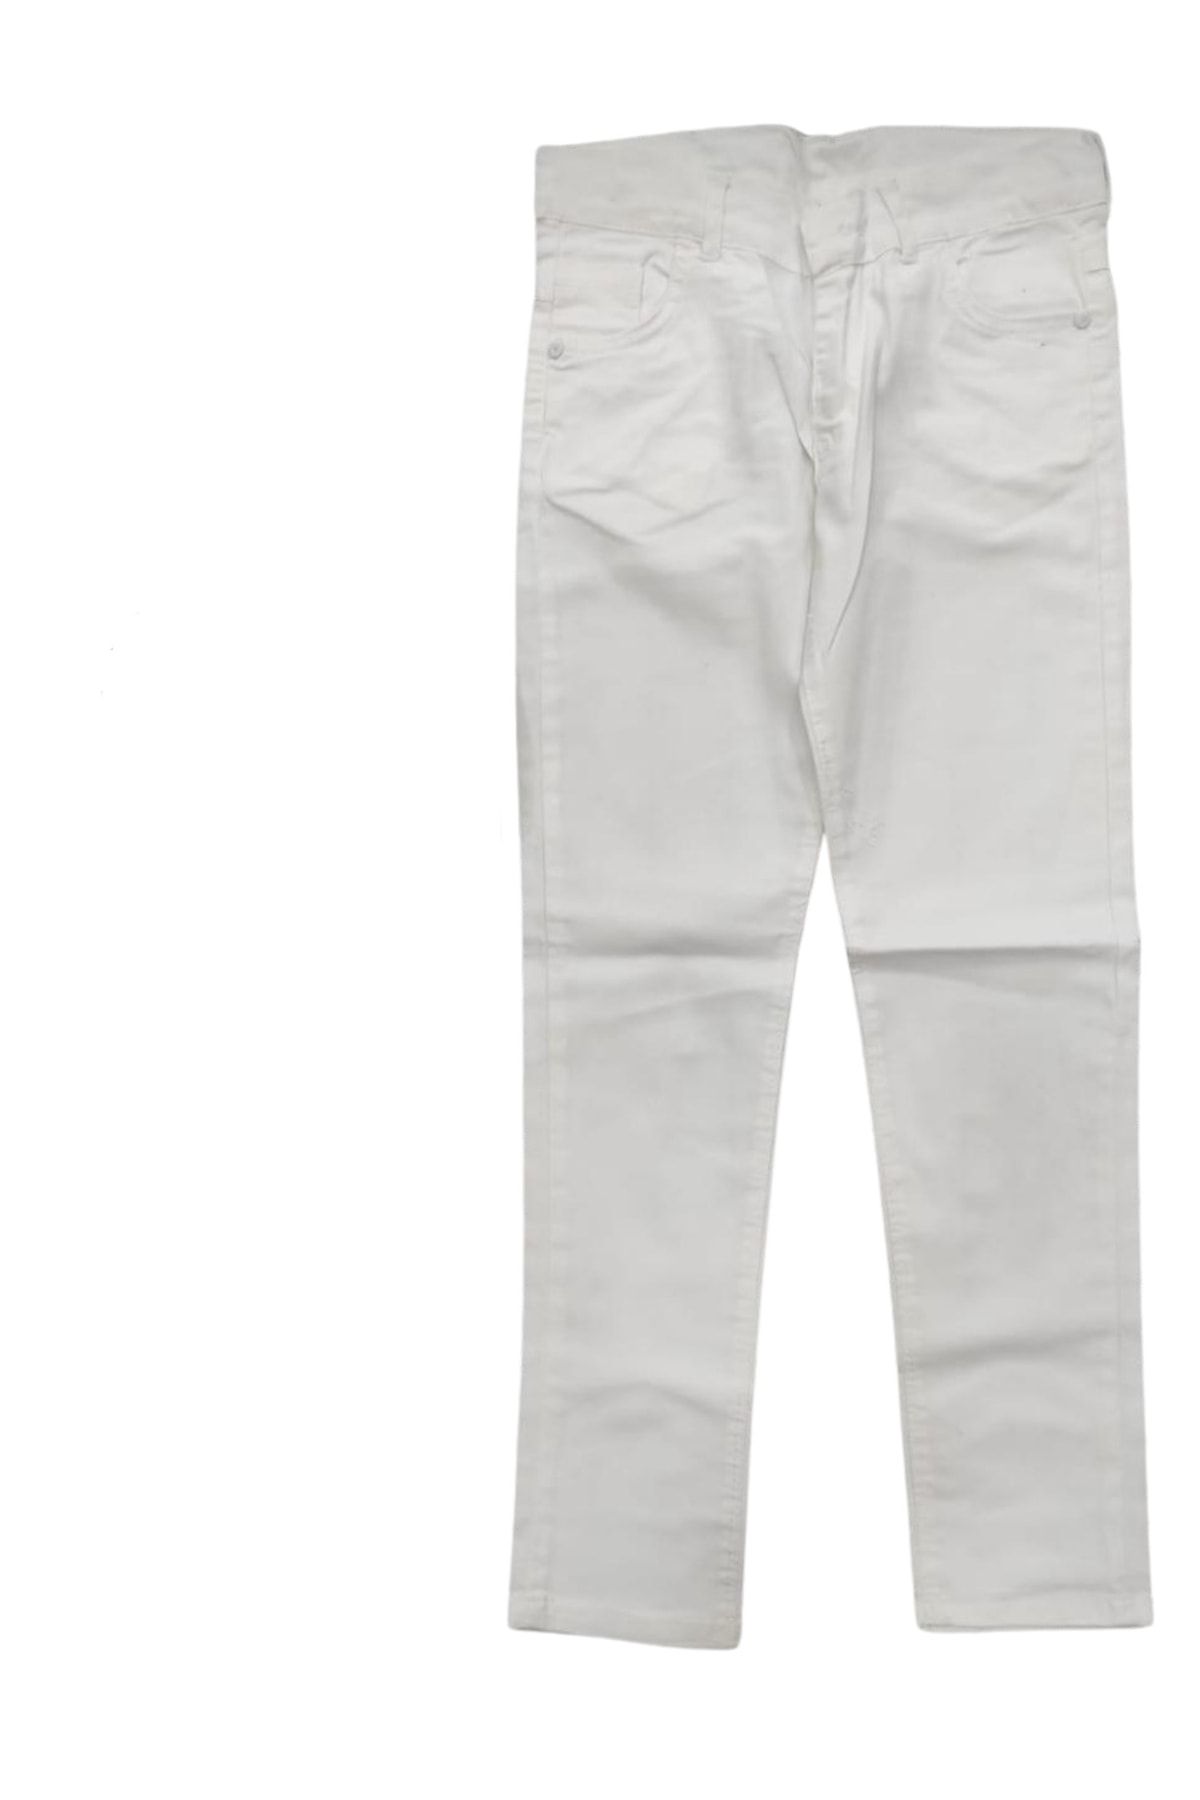 Tuğranes Çocuk Beyaz Dar Paça Full Likralı Pantolon